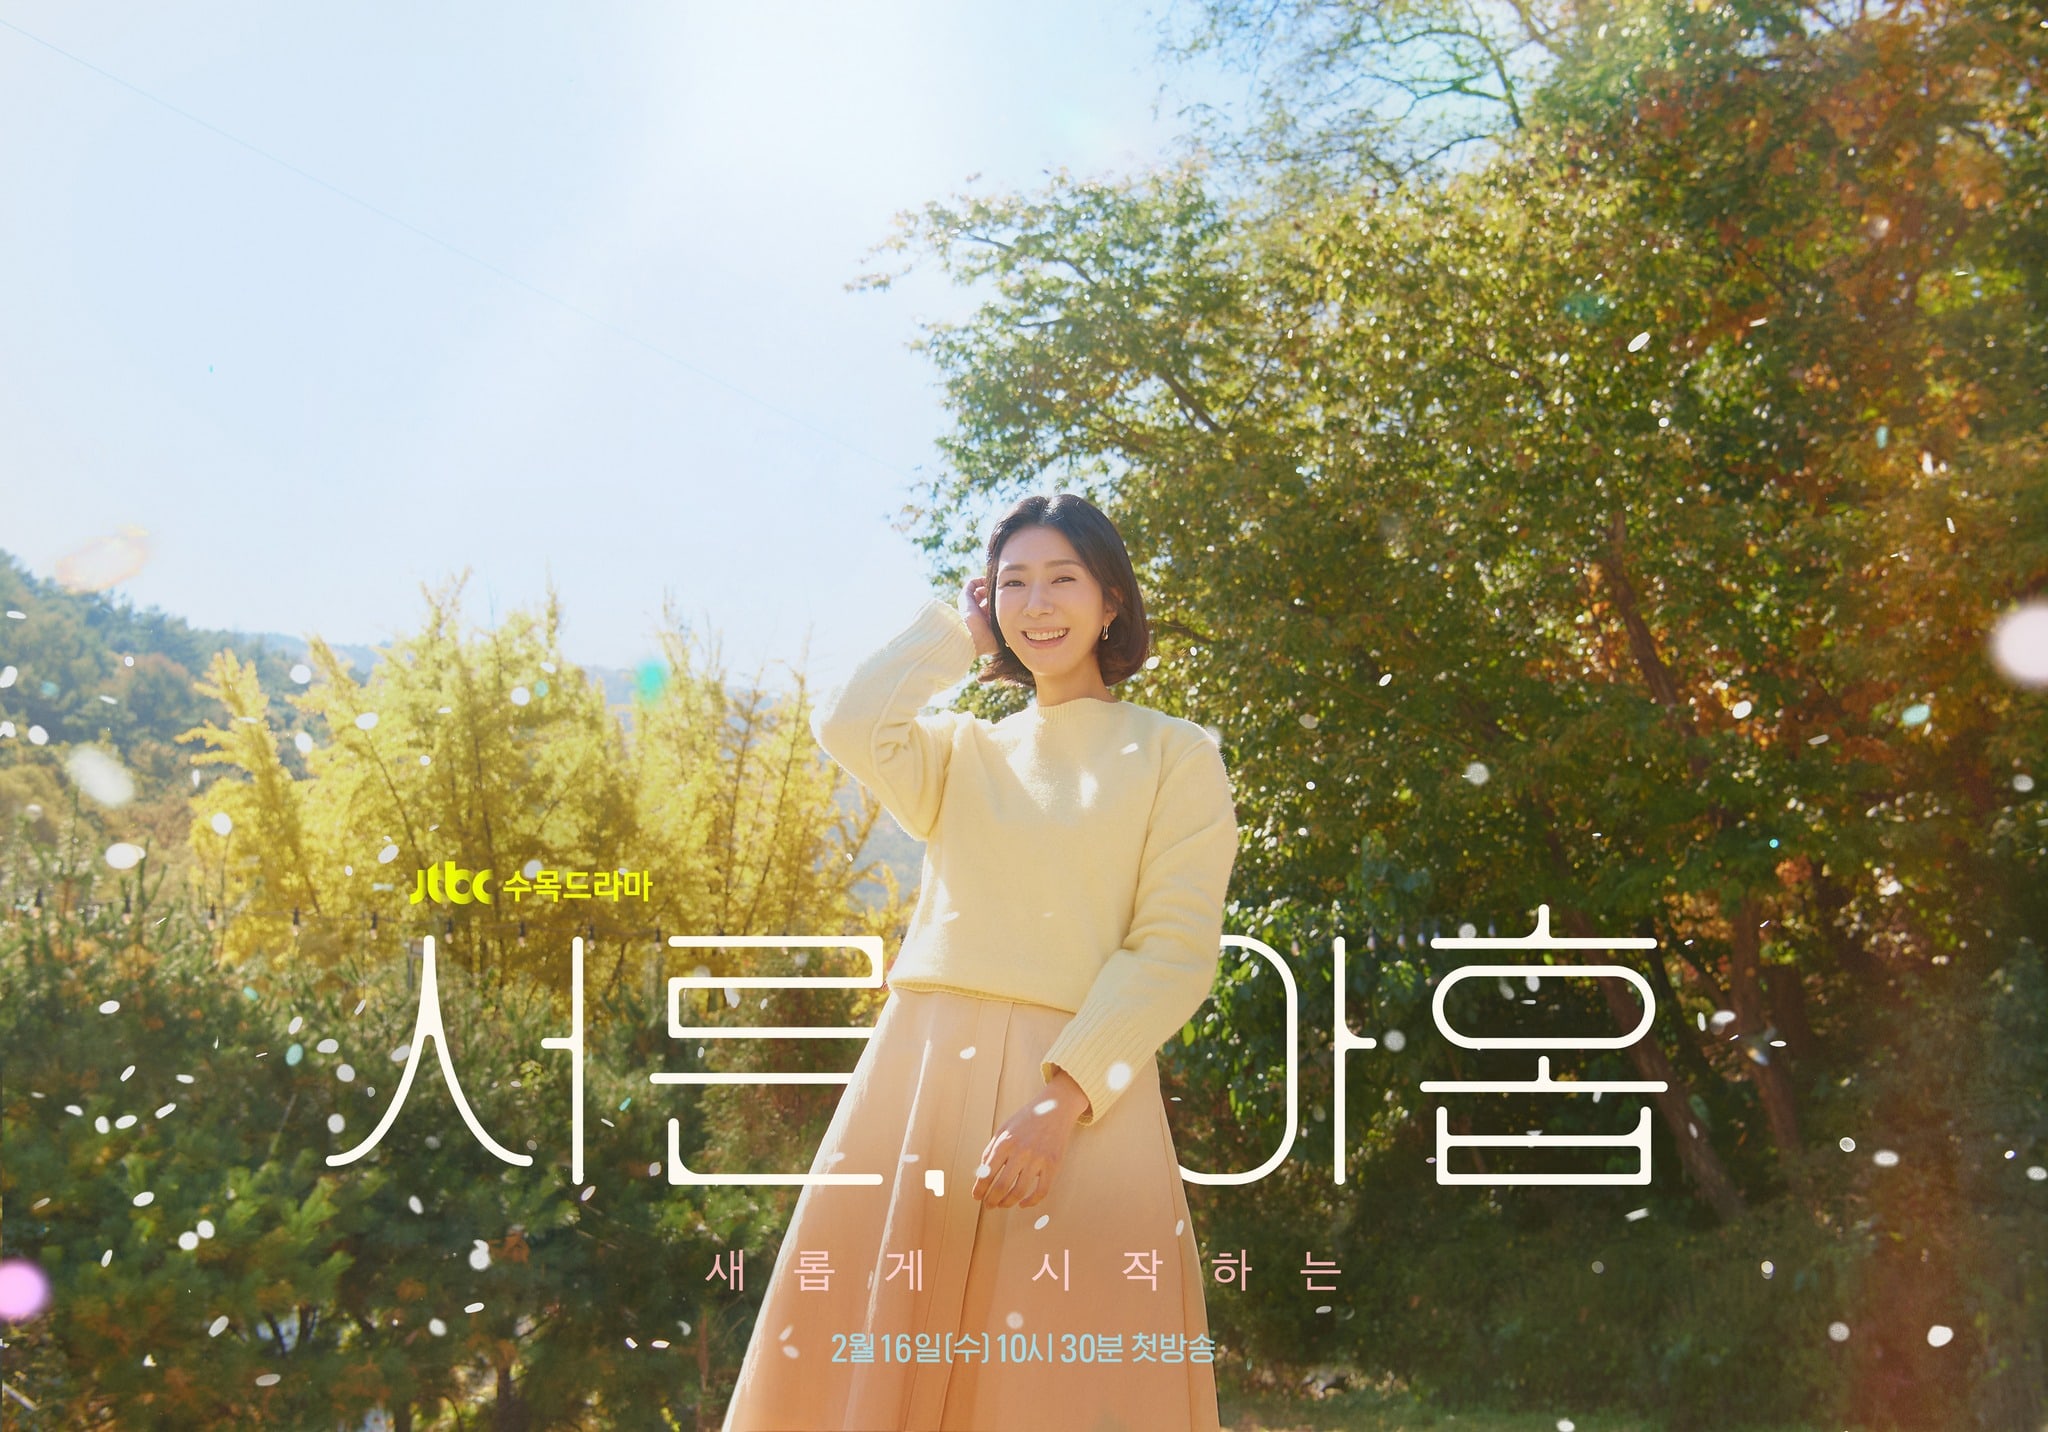 phim 39 Kim Ji Hyun vai Jang Joo Hee 03 - 39: Phim tâm lý về cuộc đời người phụ nữ trước ngưỡng tuổi 40